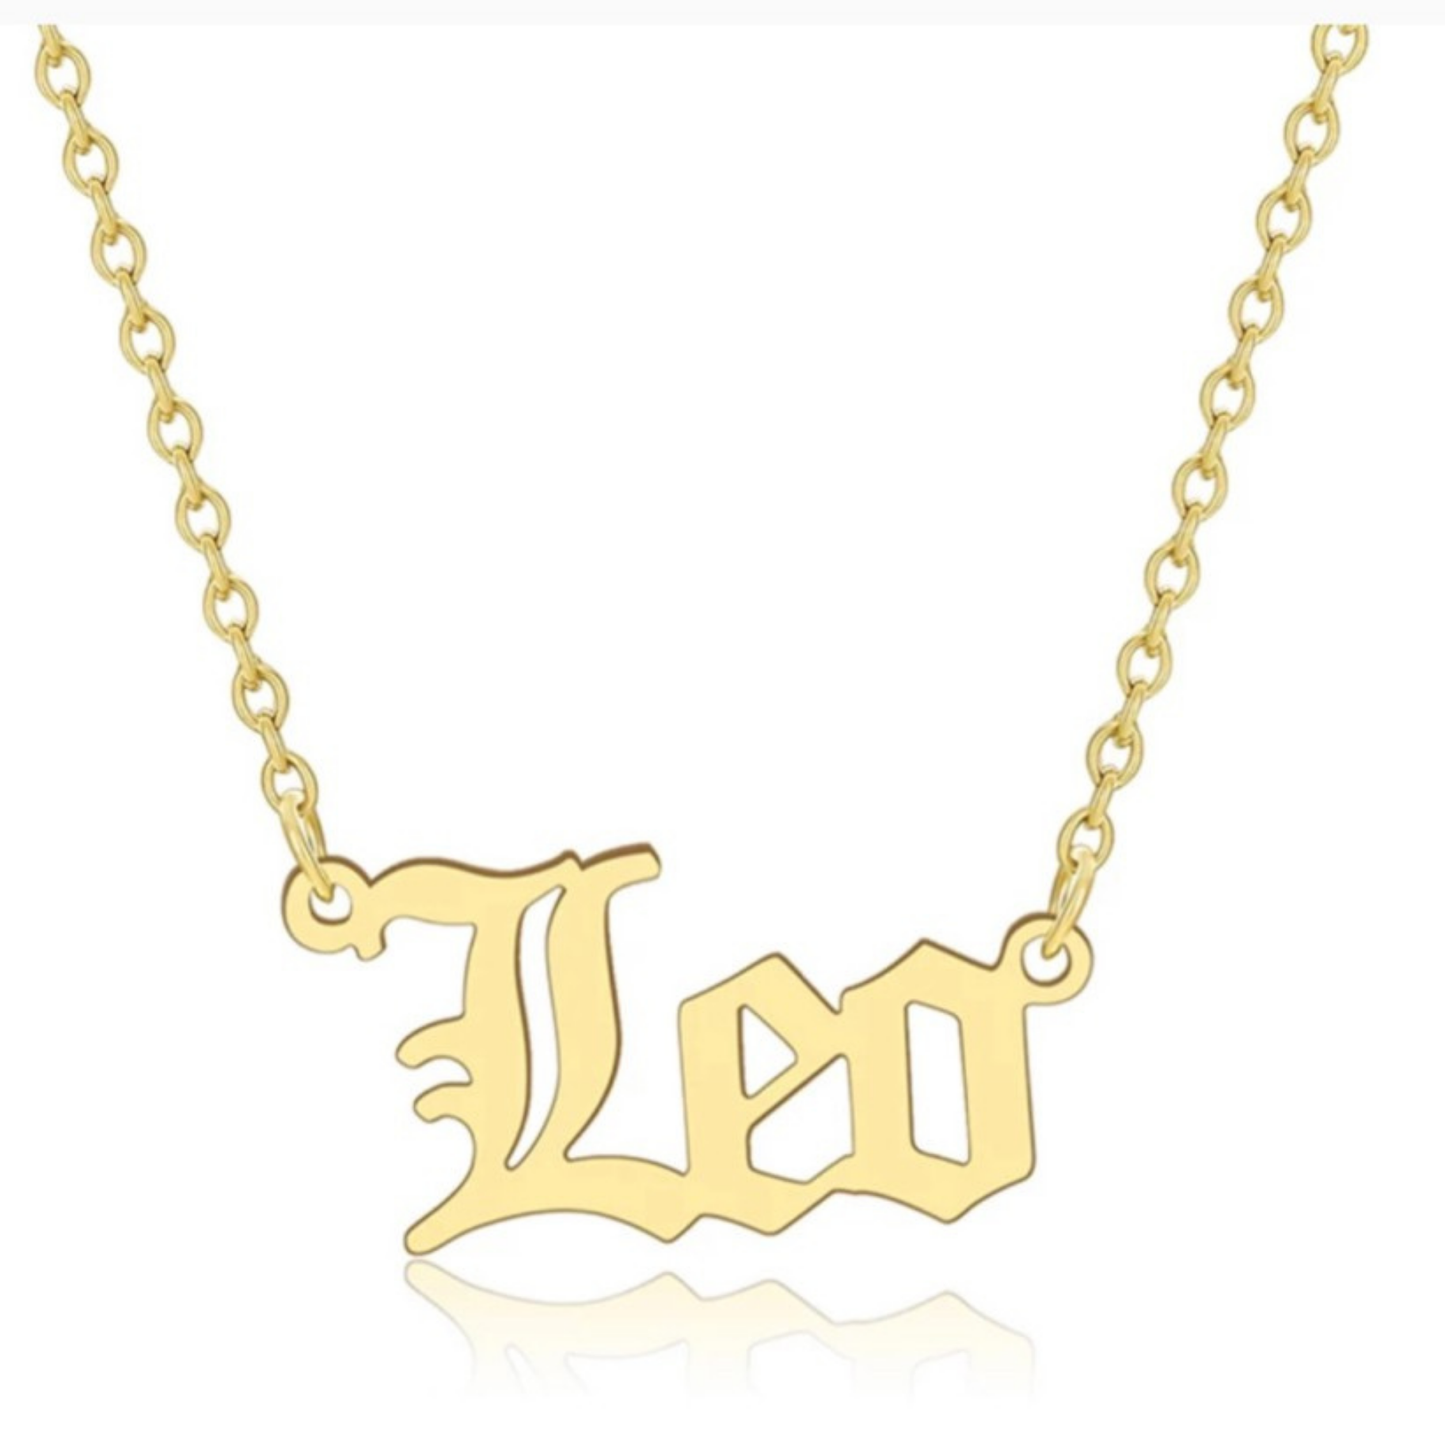 Jency Zodiac Necklace(Gold) - Jewelry gift